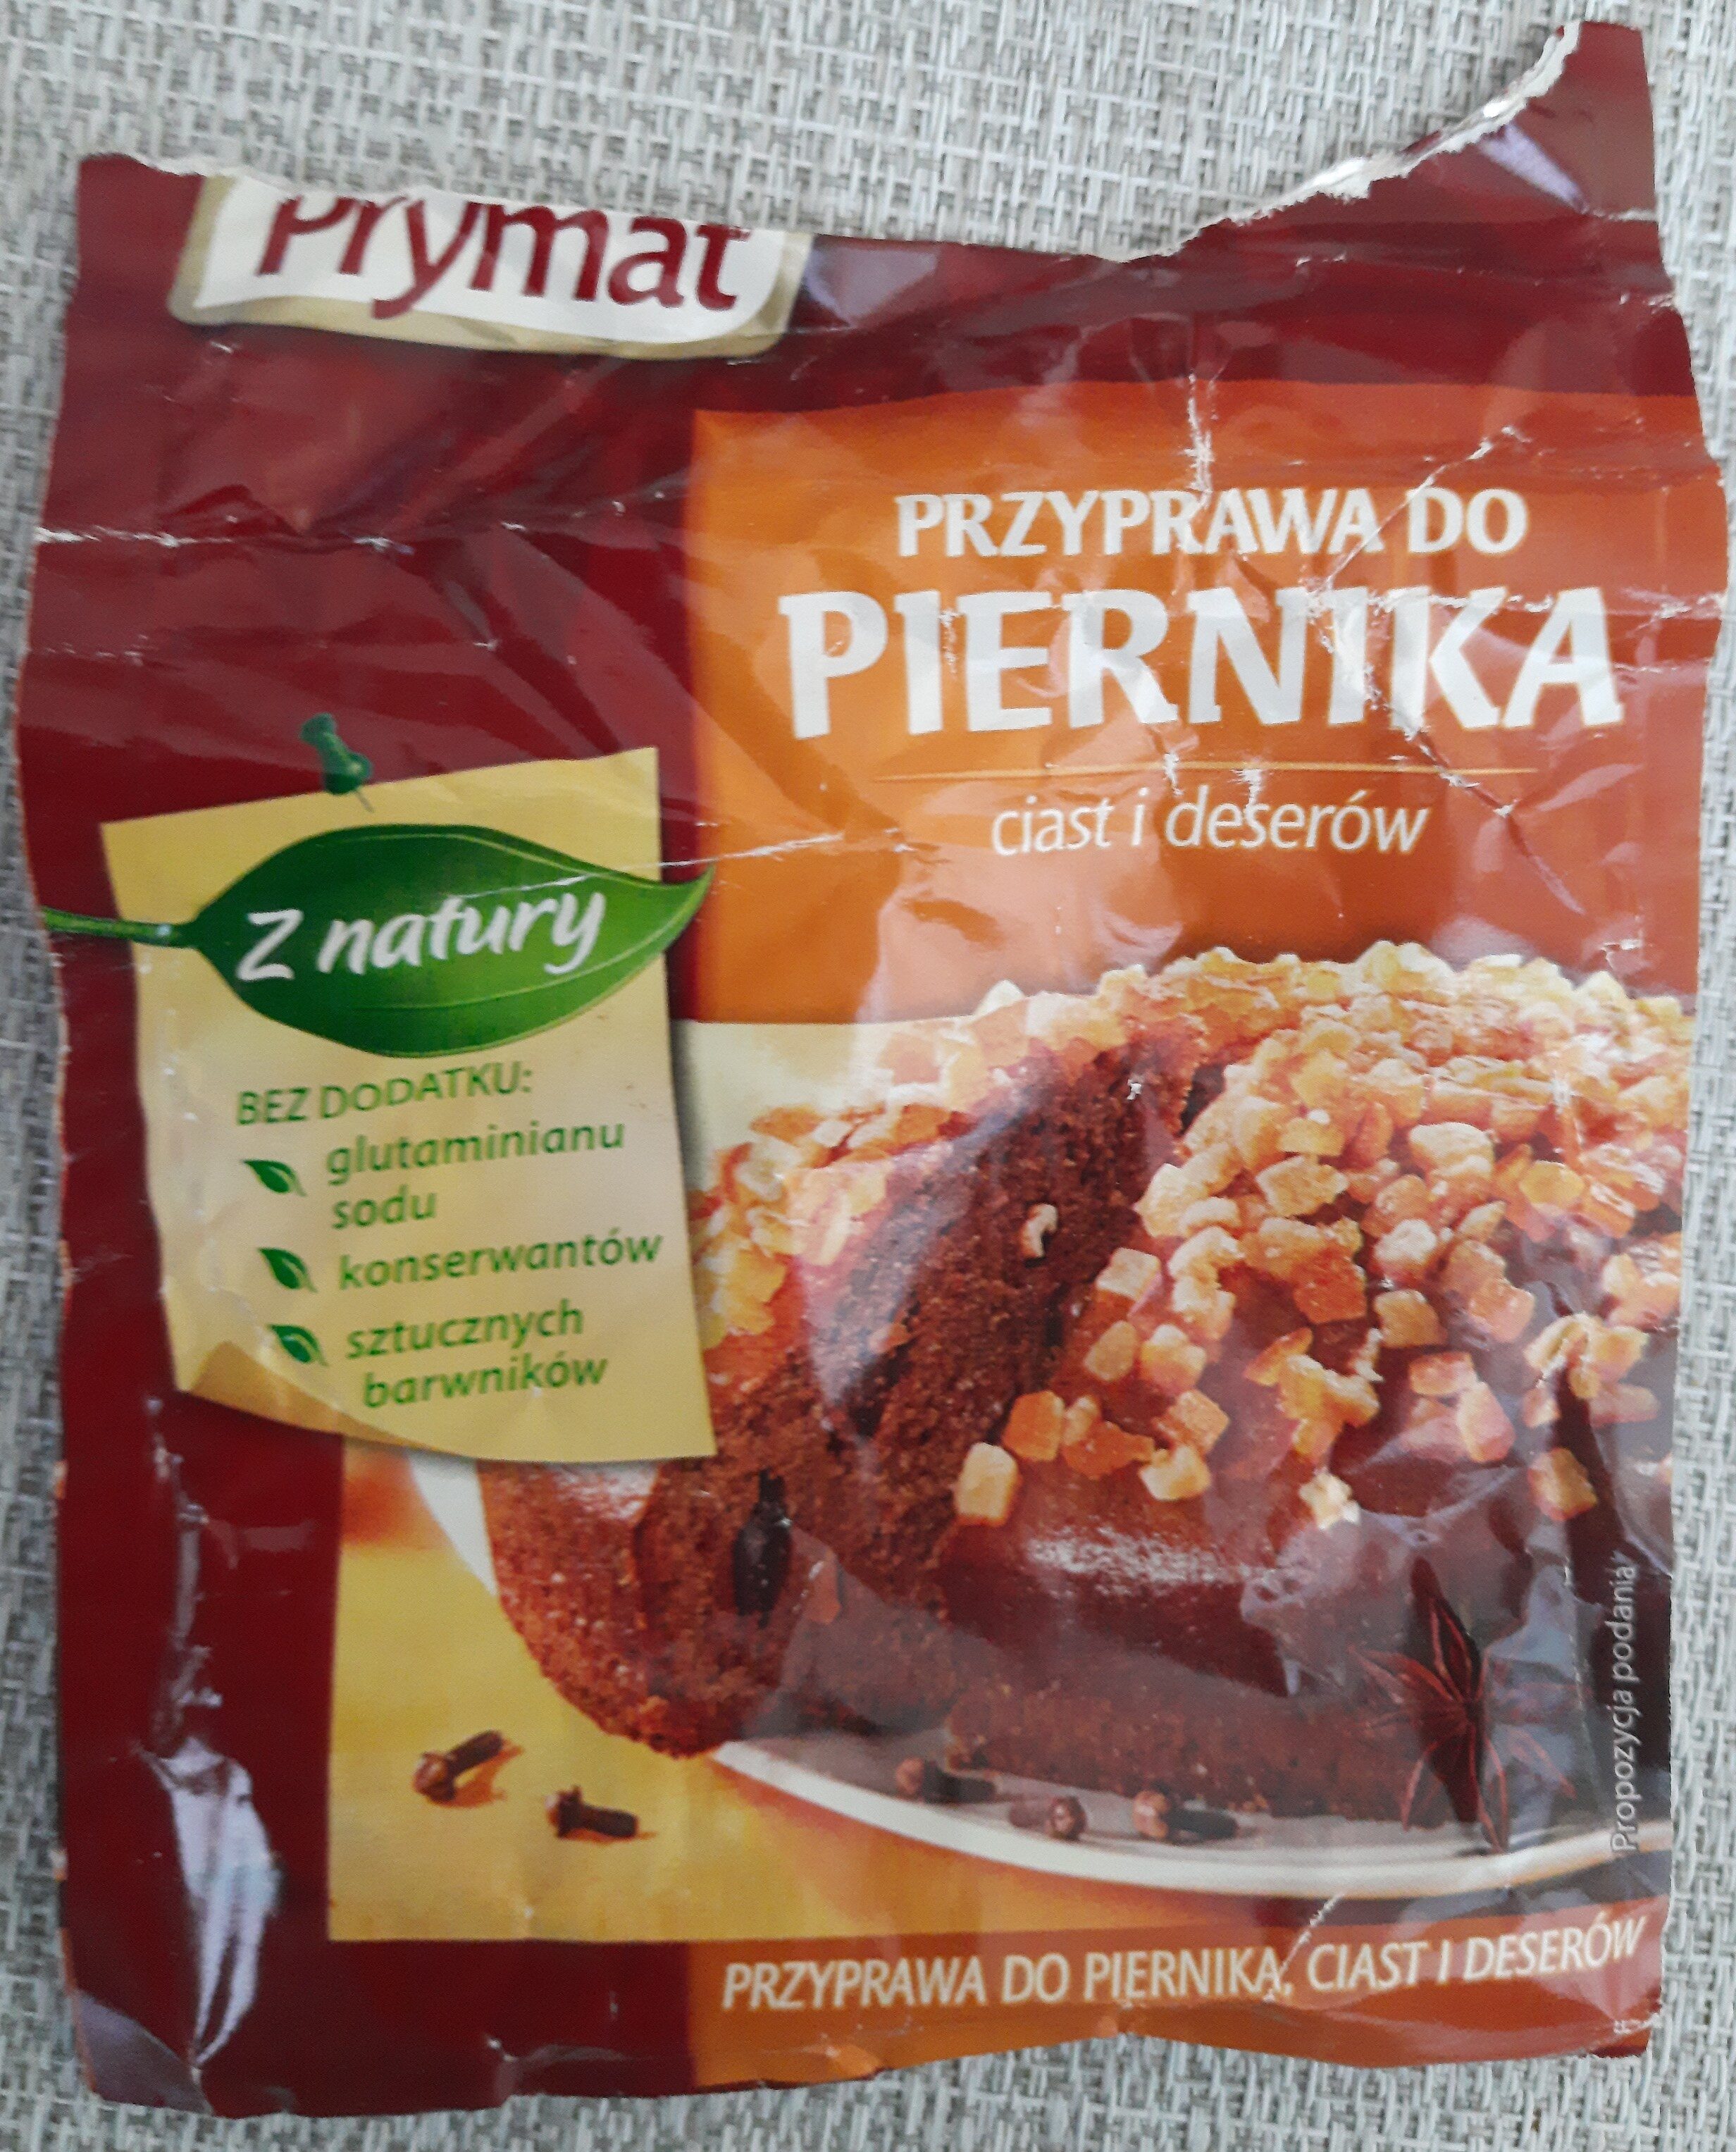 Przyprawa do piernika, ciast i deserów - Product - pl